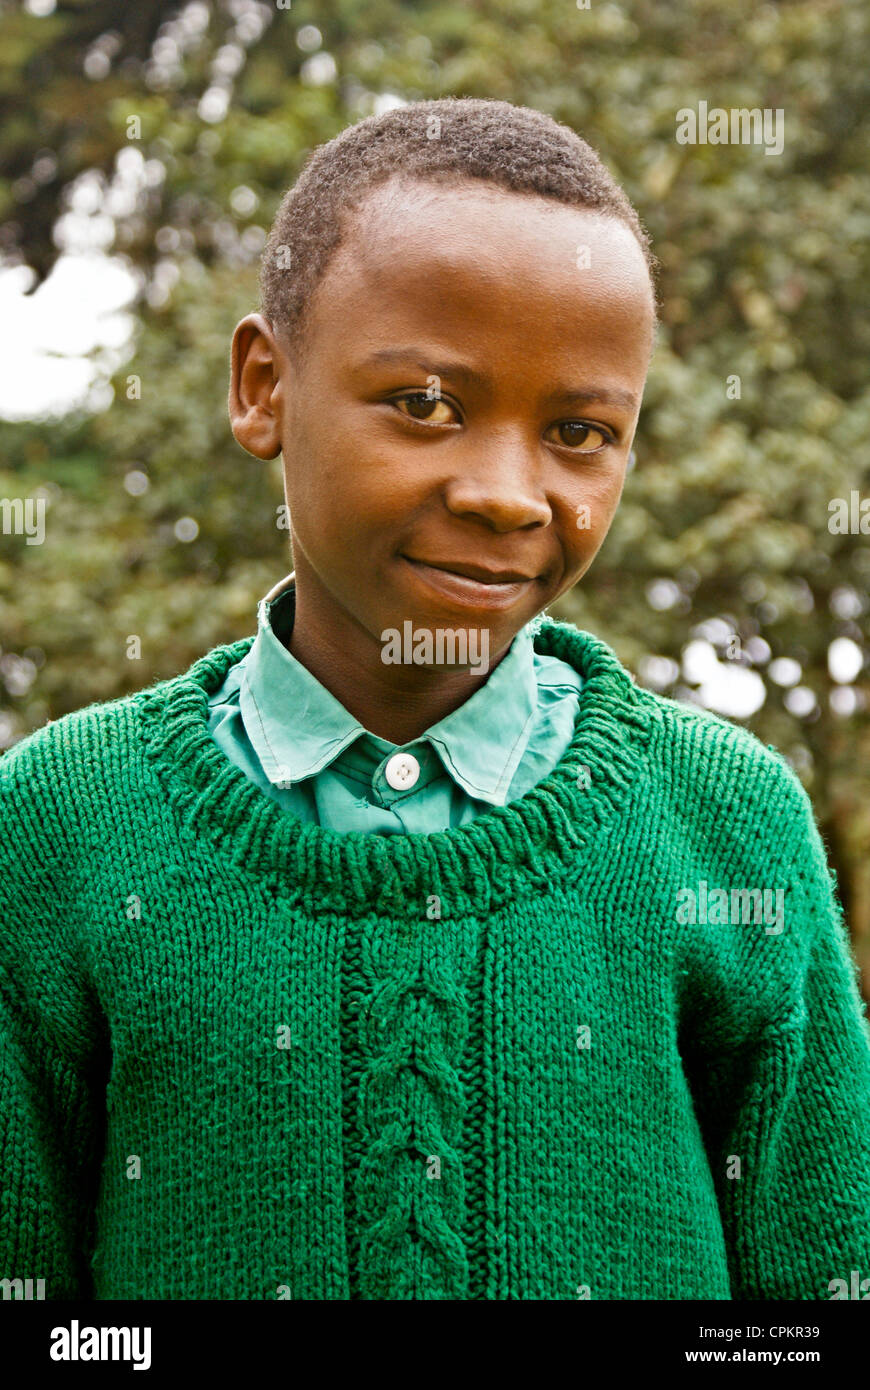 Portrait de jeune garçon au Kenya Banque D'Images